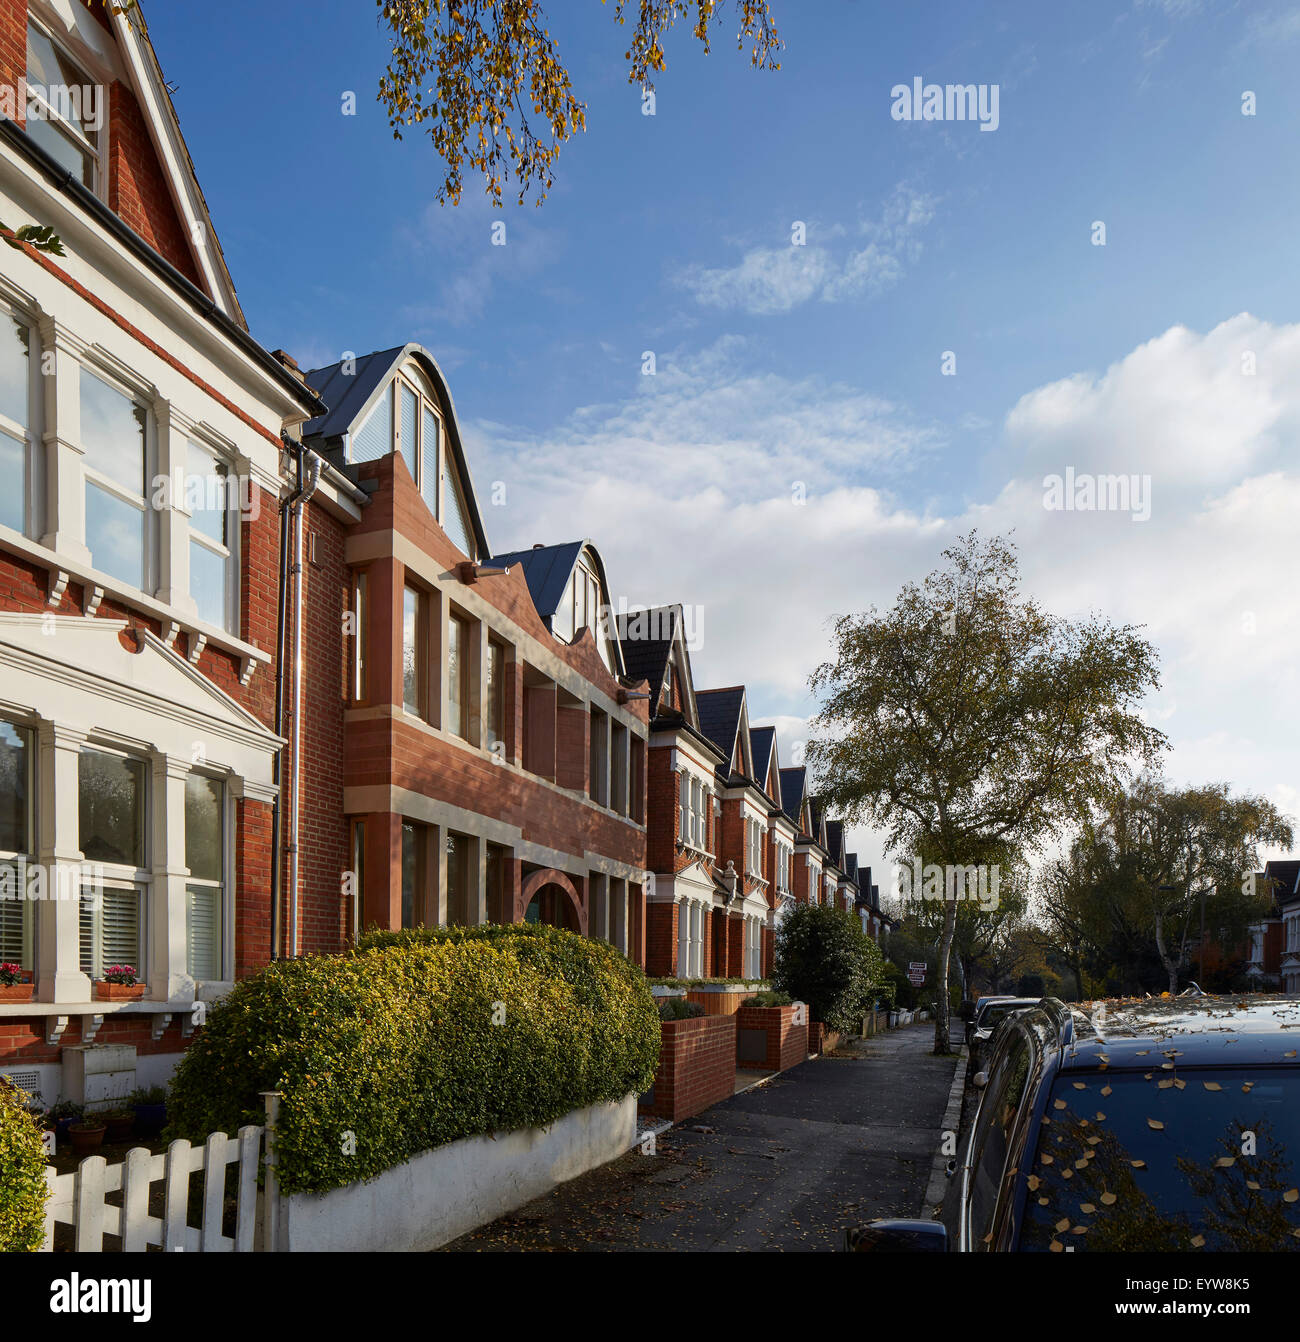 Ansicht der Straßenterrasse mit edwardianischen Stil Straßenfassade in Sicht. Brownstones London, London, Vereinigtes Königreich. Architekt: Stockfoto